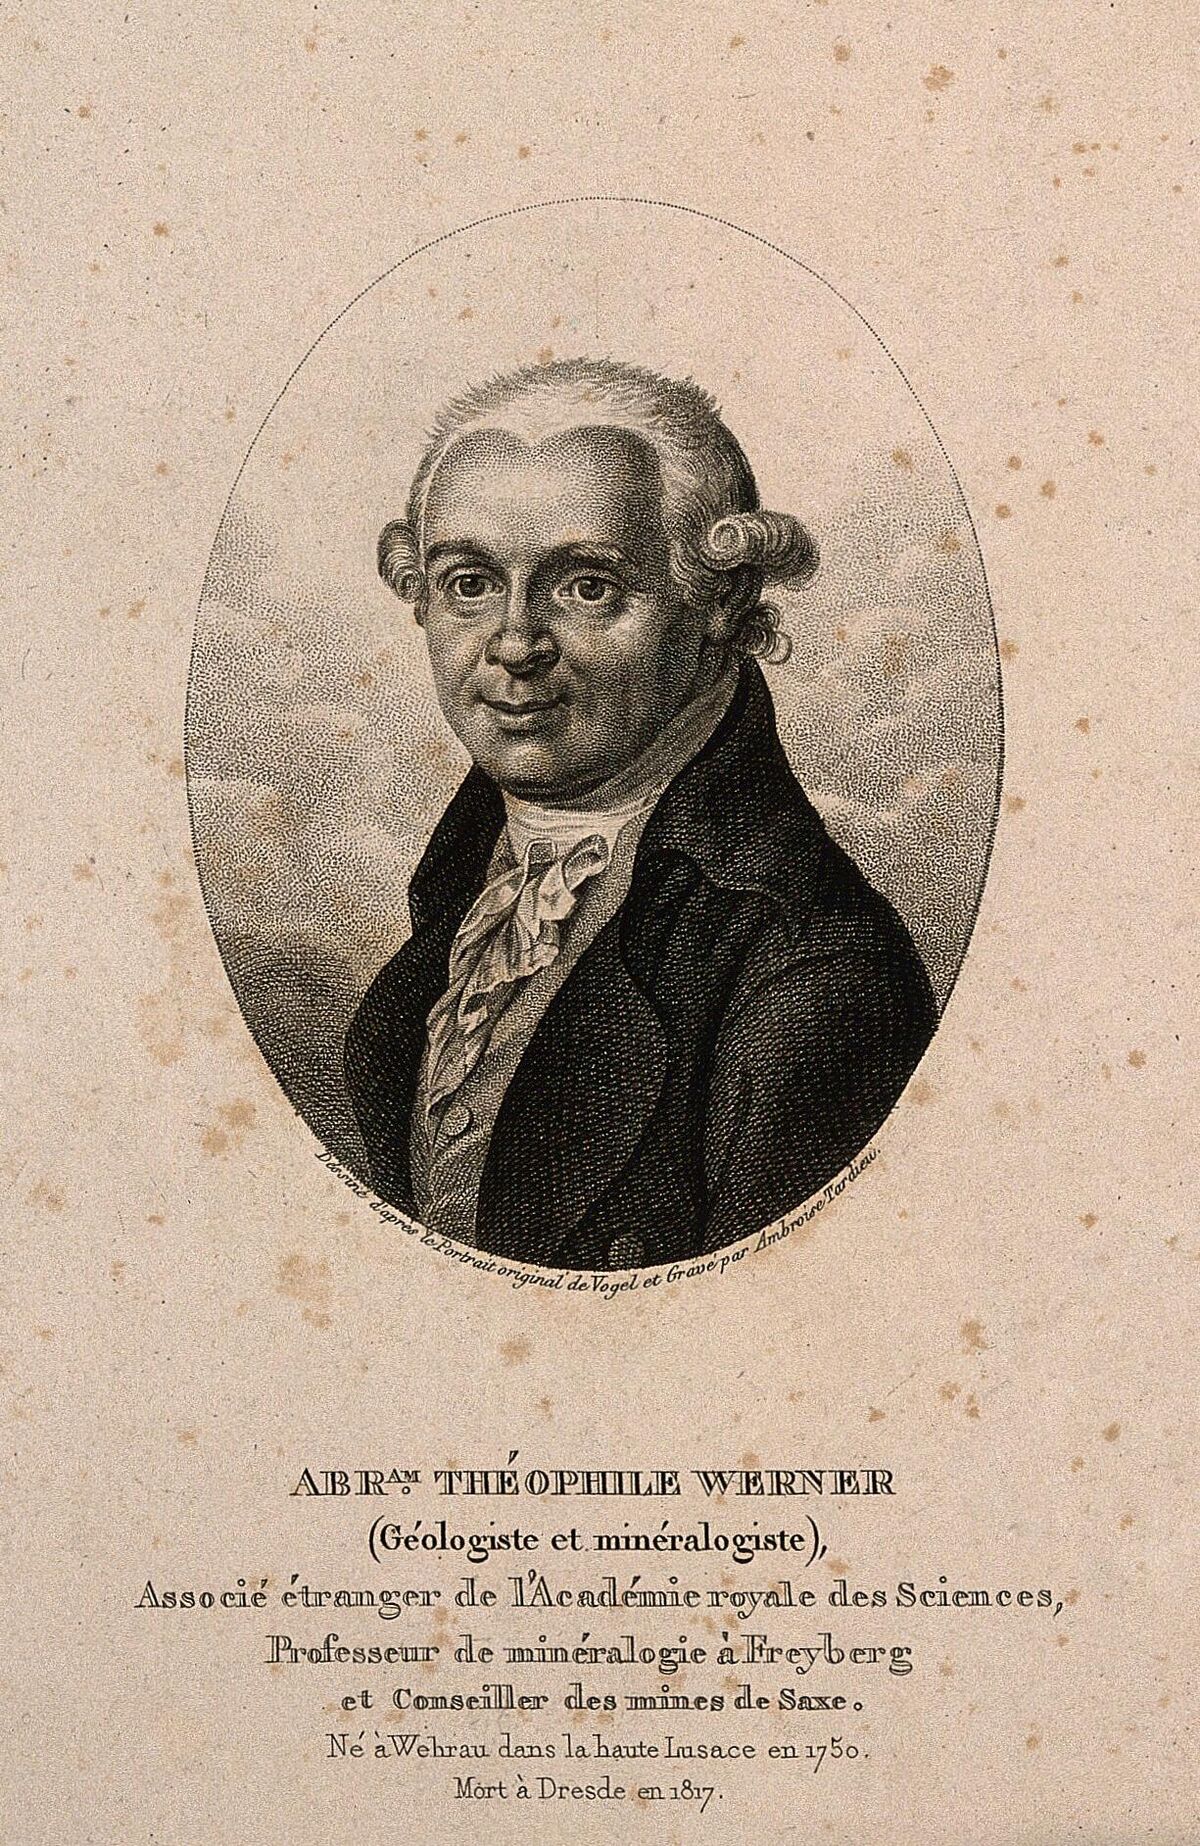 GFD 1/76: Abraham Gottlob Werner (Stich von Ambroise Tardieu nach Vogel, um 1810)